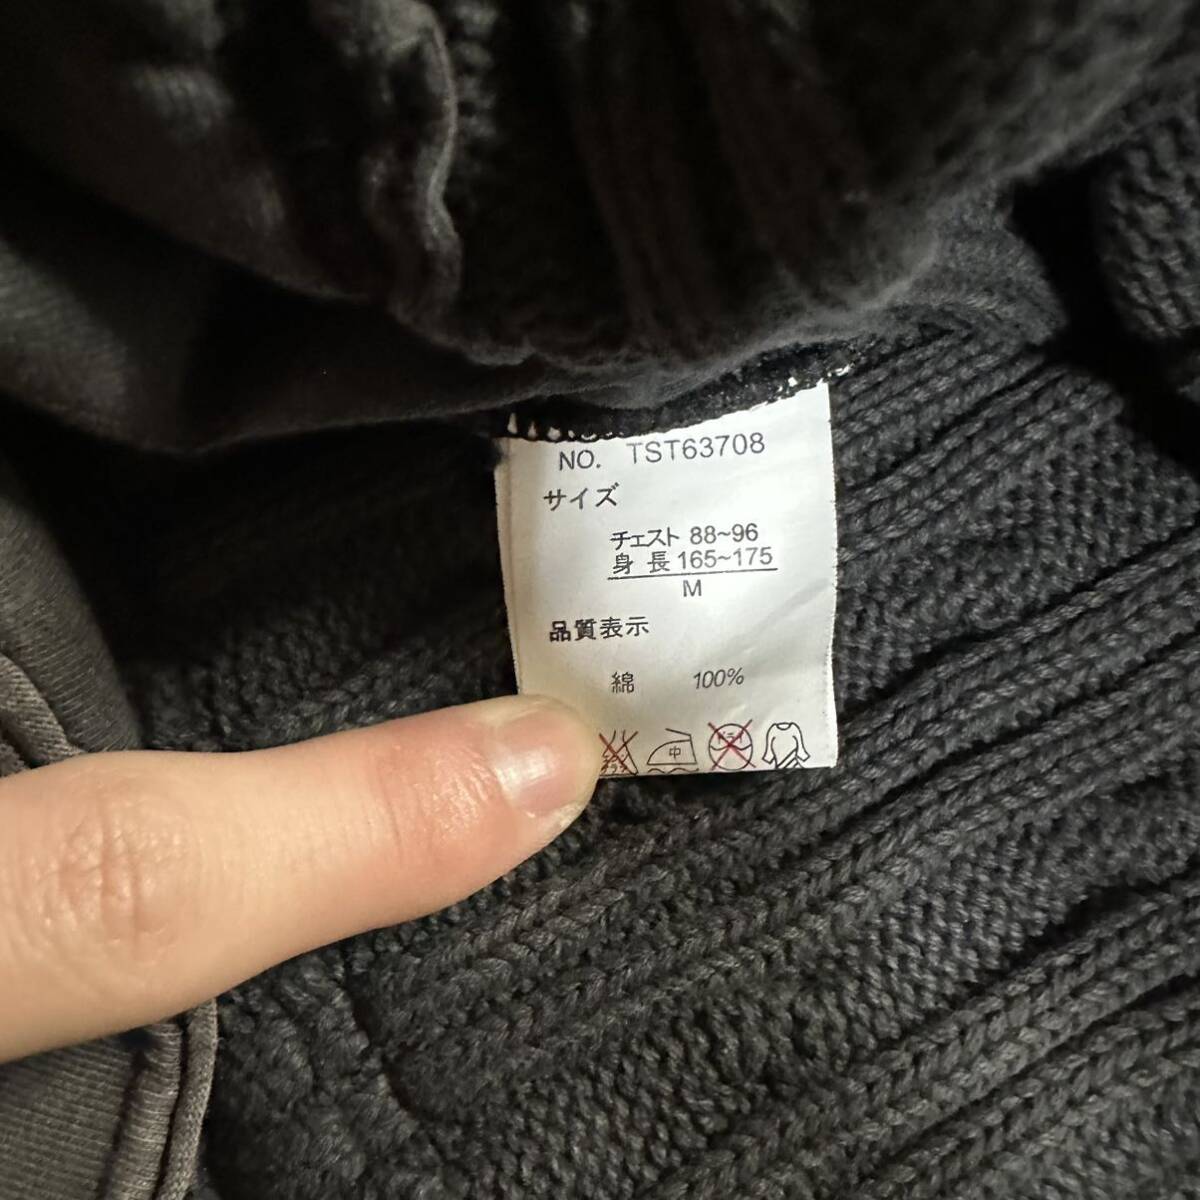 Rare Japanese Label Y2K design knit jacket 14th addiction share spirit ifsixwasnine tornado mart lgb goa kmrii obelisk 00s archive